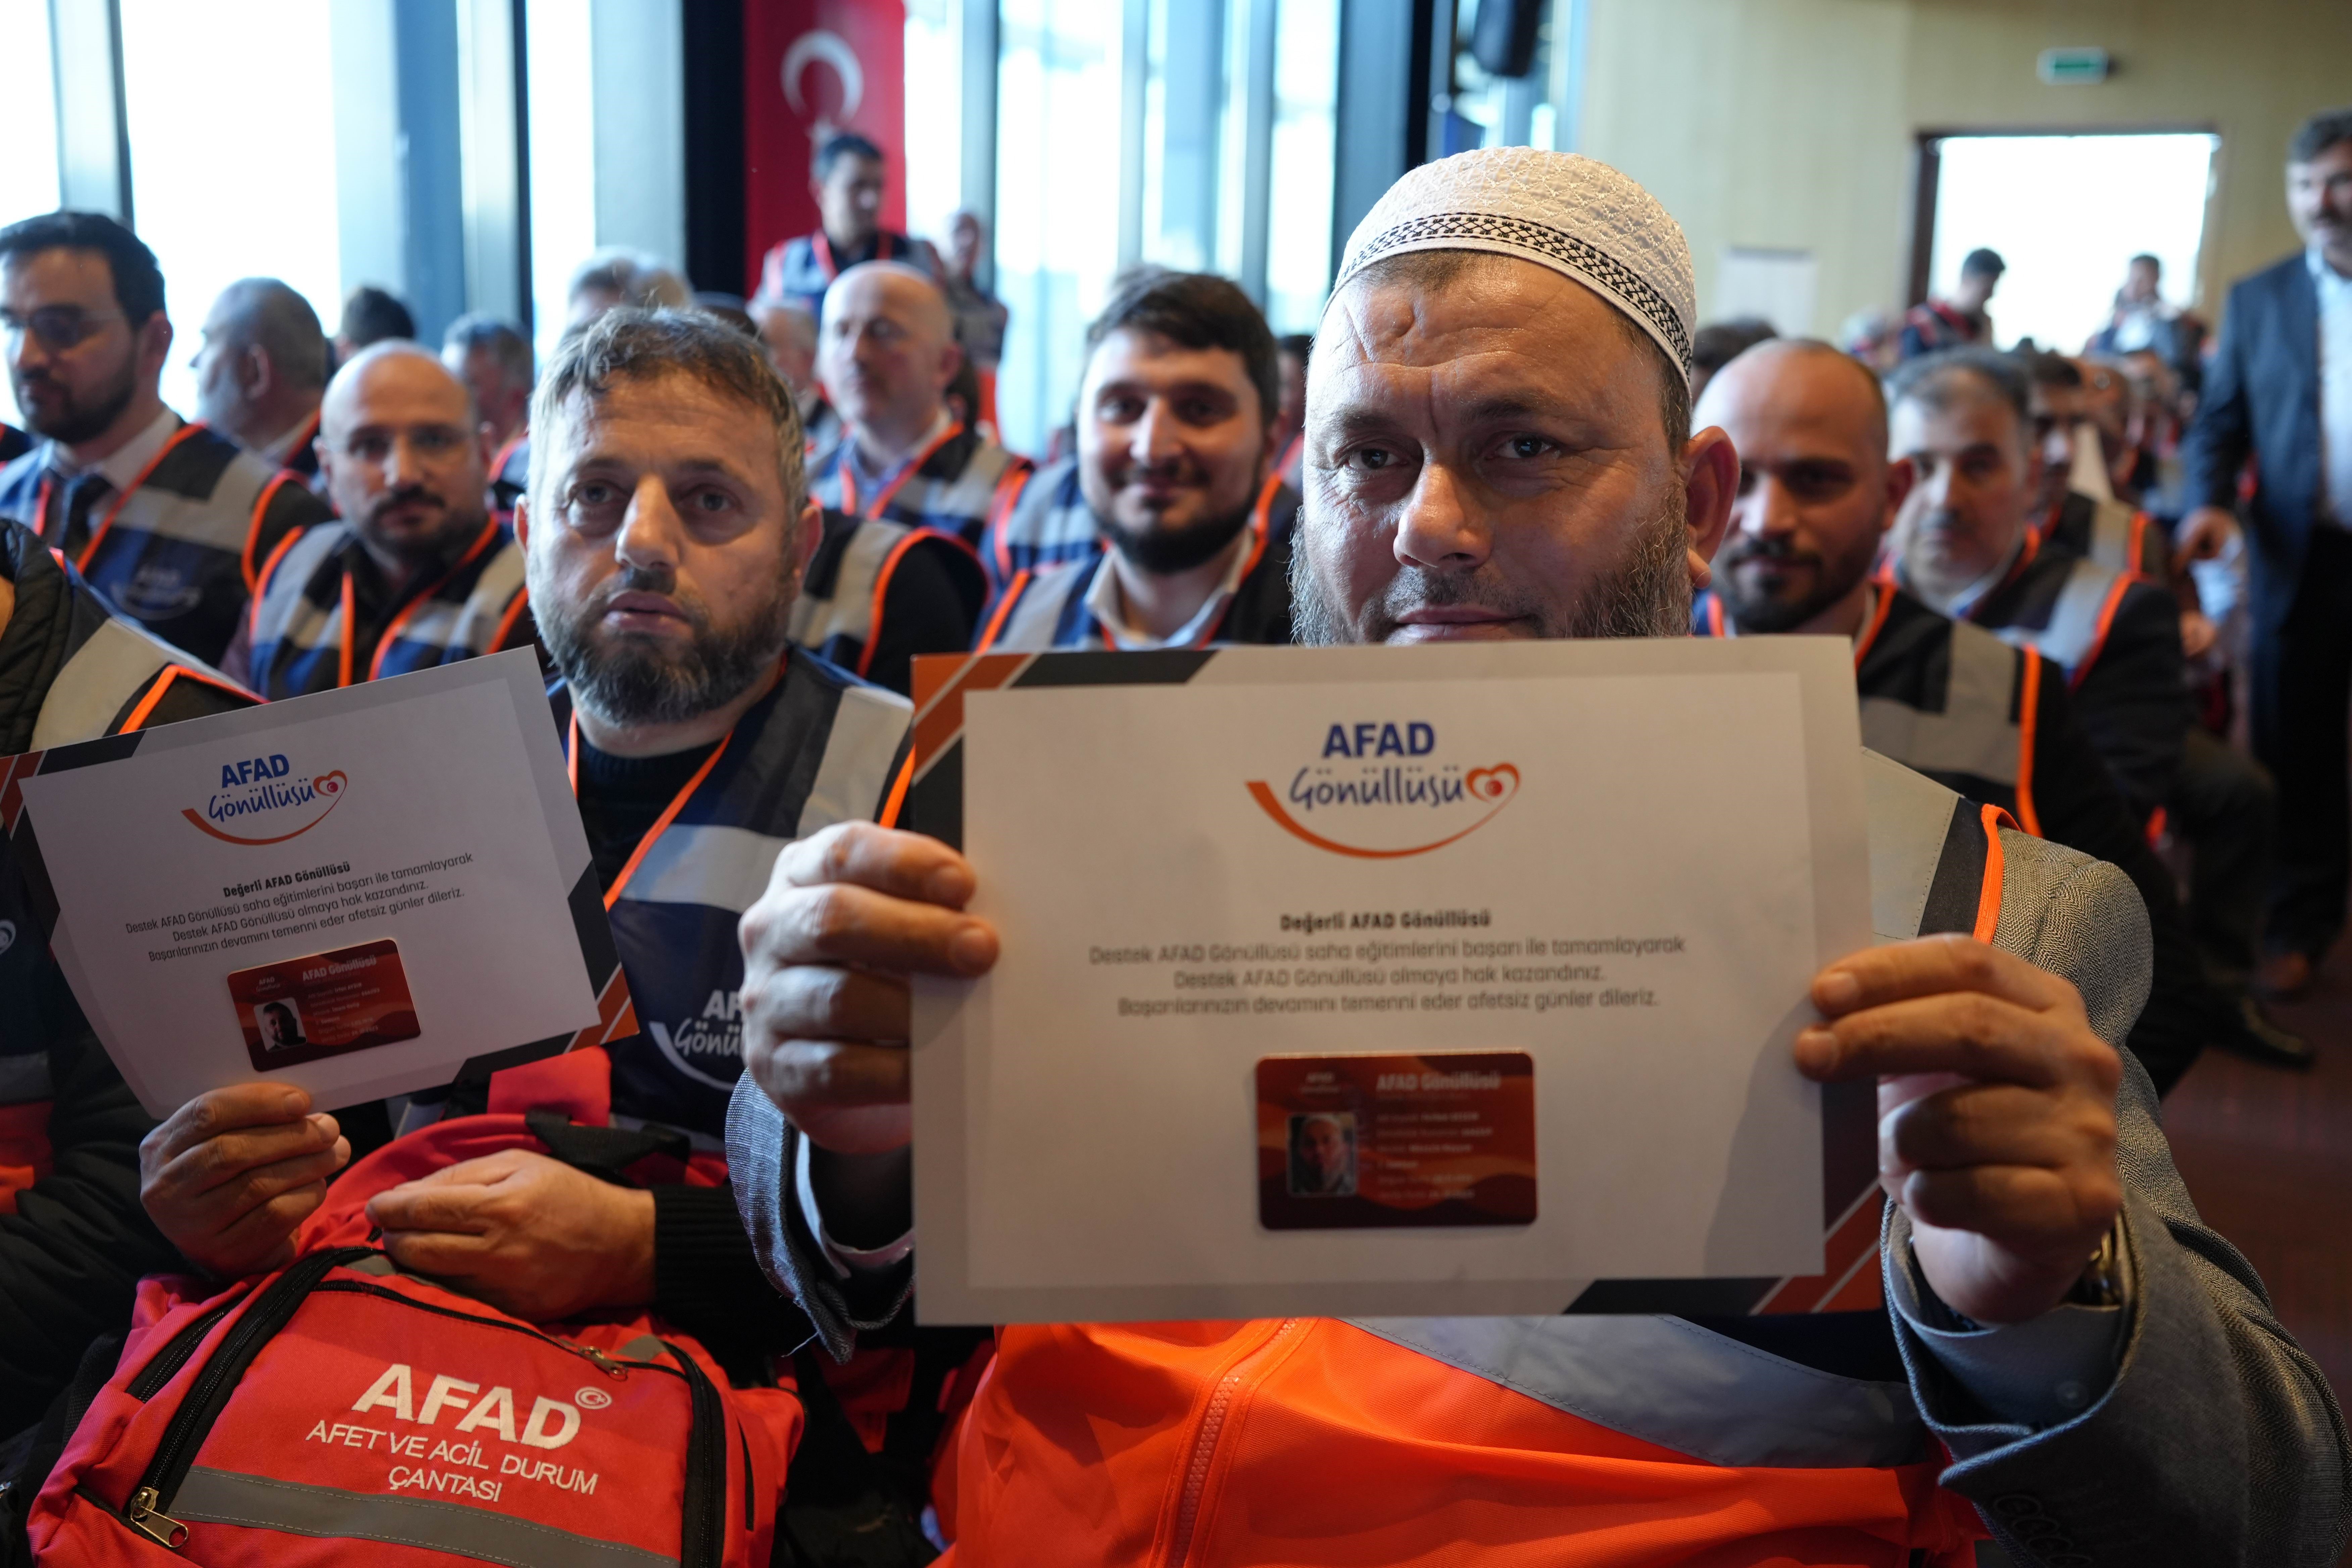 Din görevlisi ve sağlık çalışanından oluşan 375 kişi destek AFAD gönüllüsü oldu